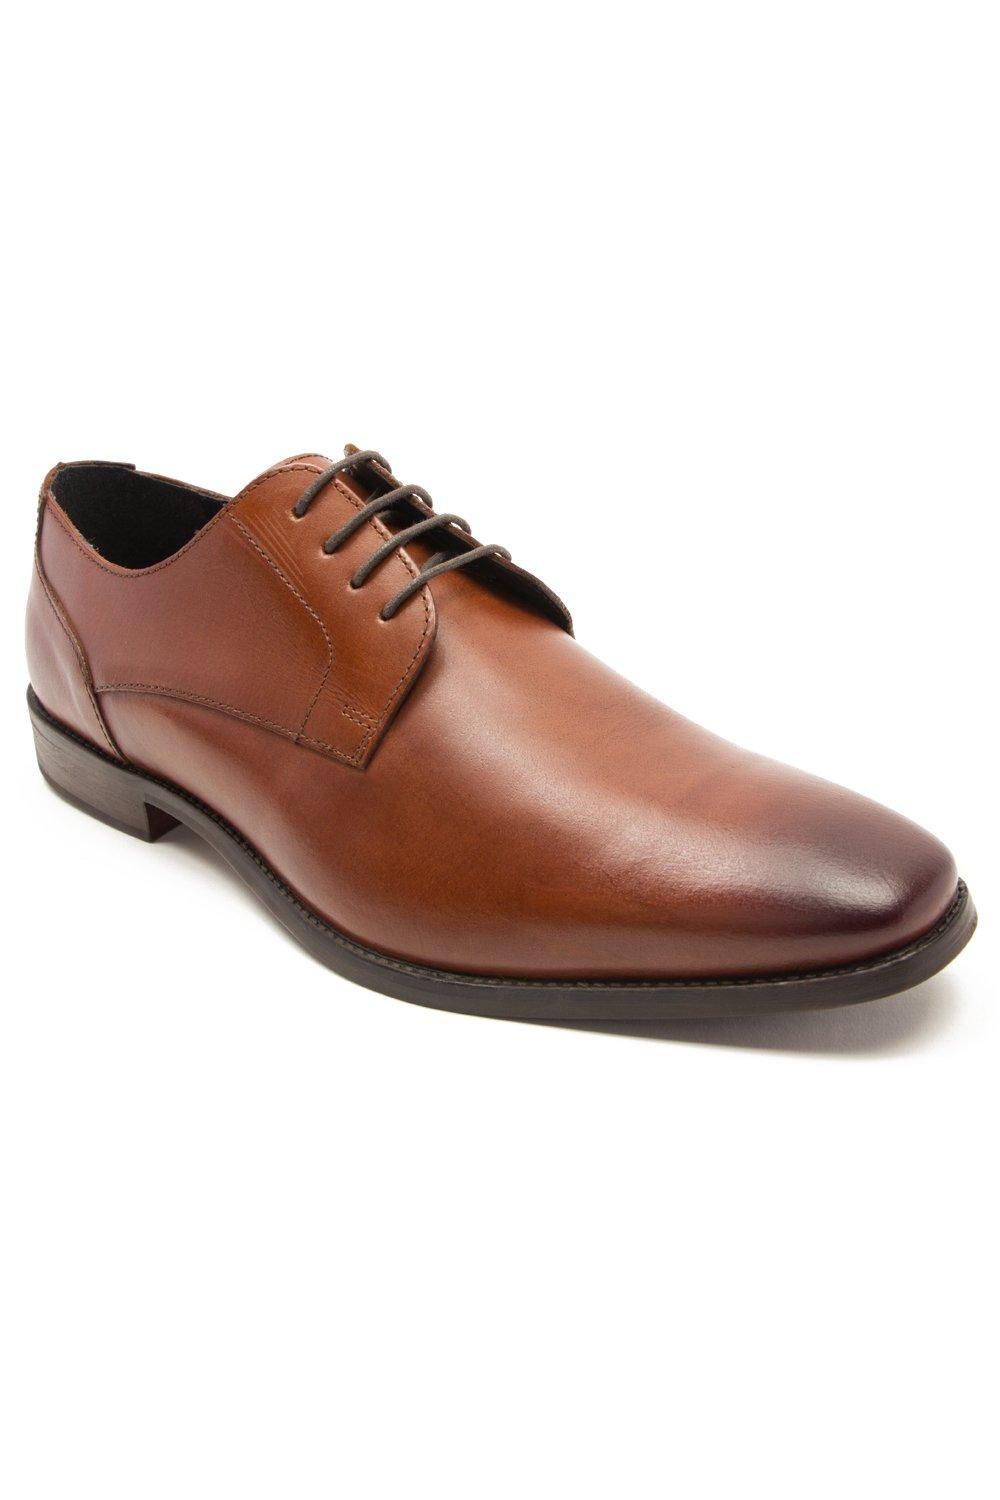 Формальные кожаные туфли дерби на шнуровке 'Falcon' Thomas Crick, коричневый мужские классические туфли свадебные оксфорды деловые туфли на шнуровке для офиса лето